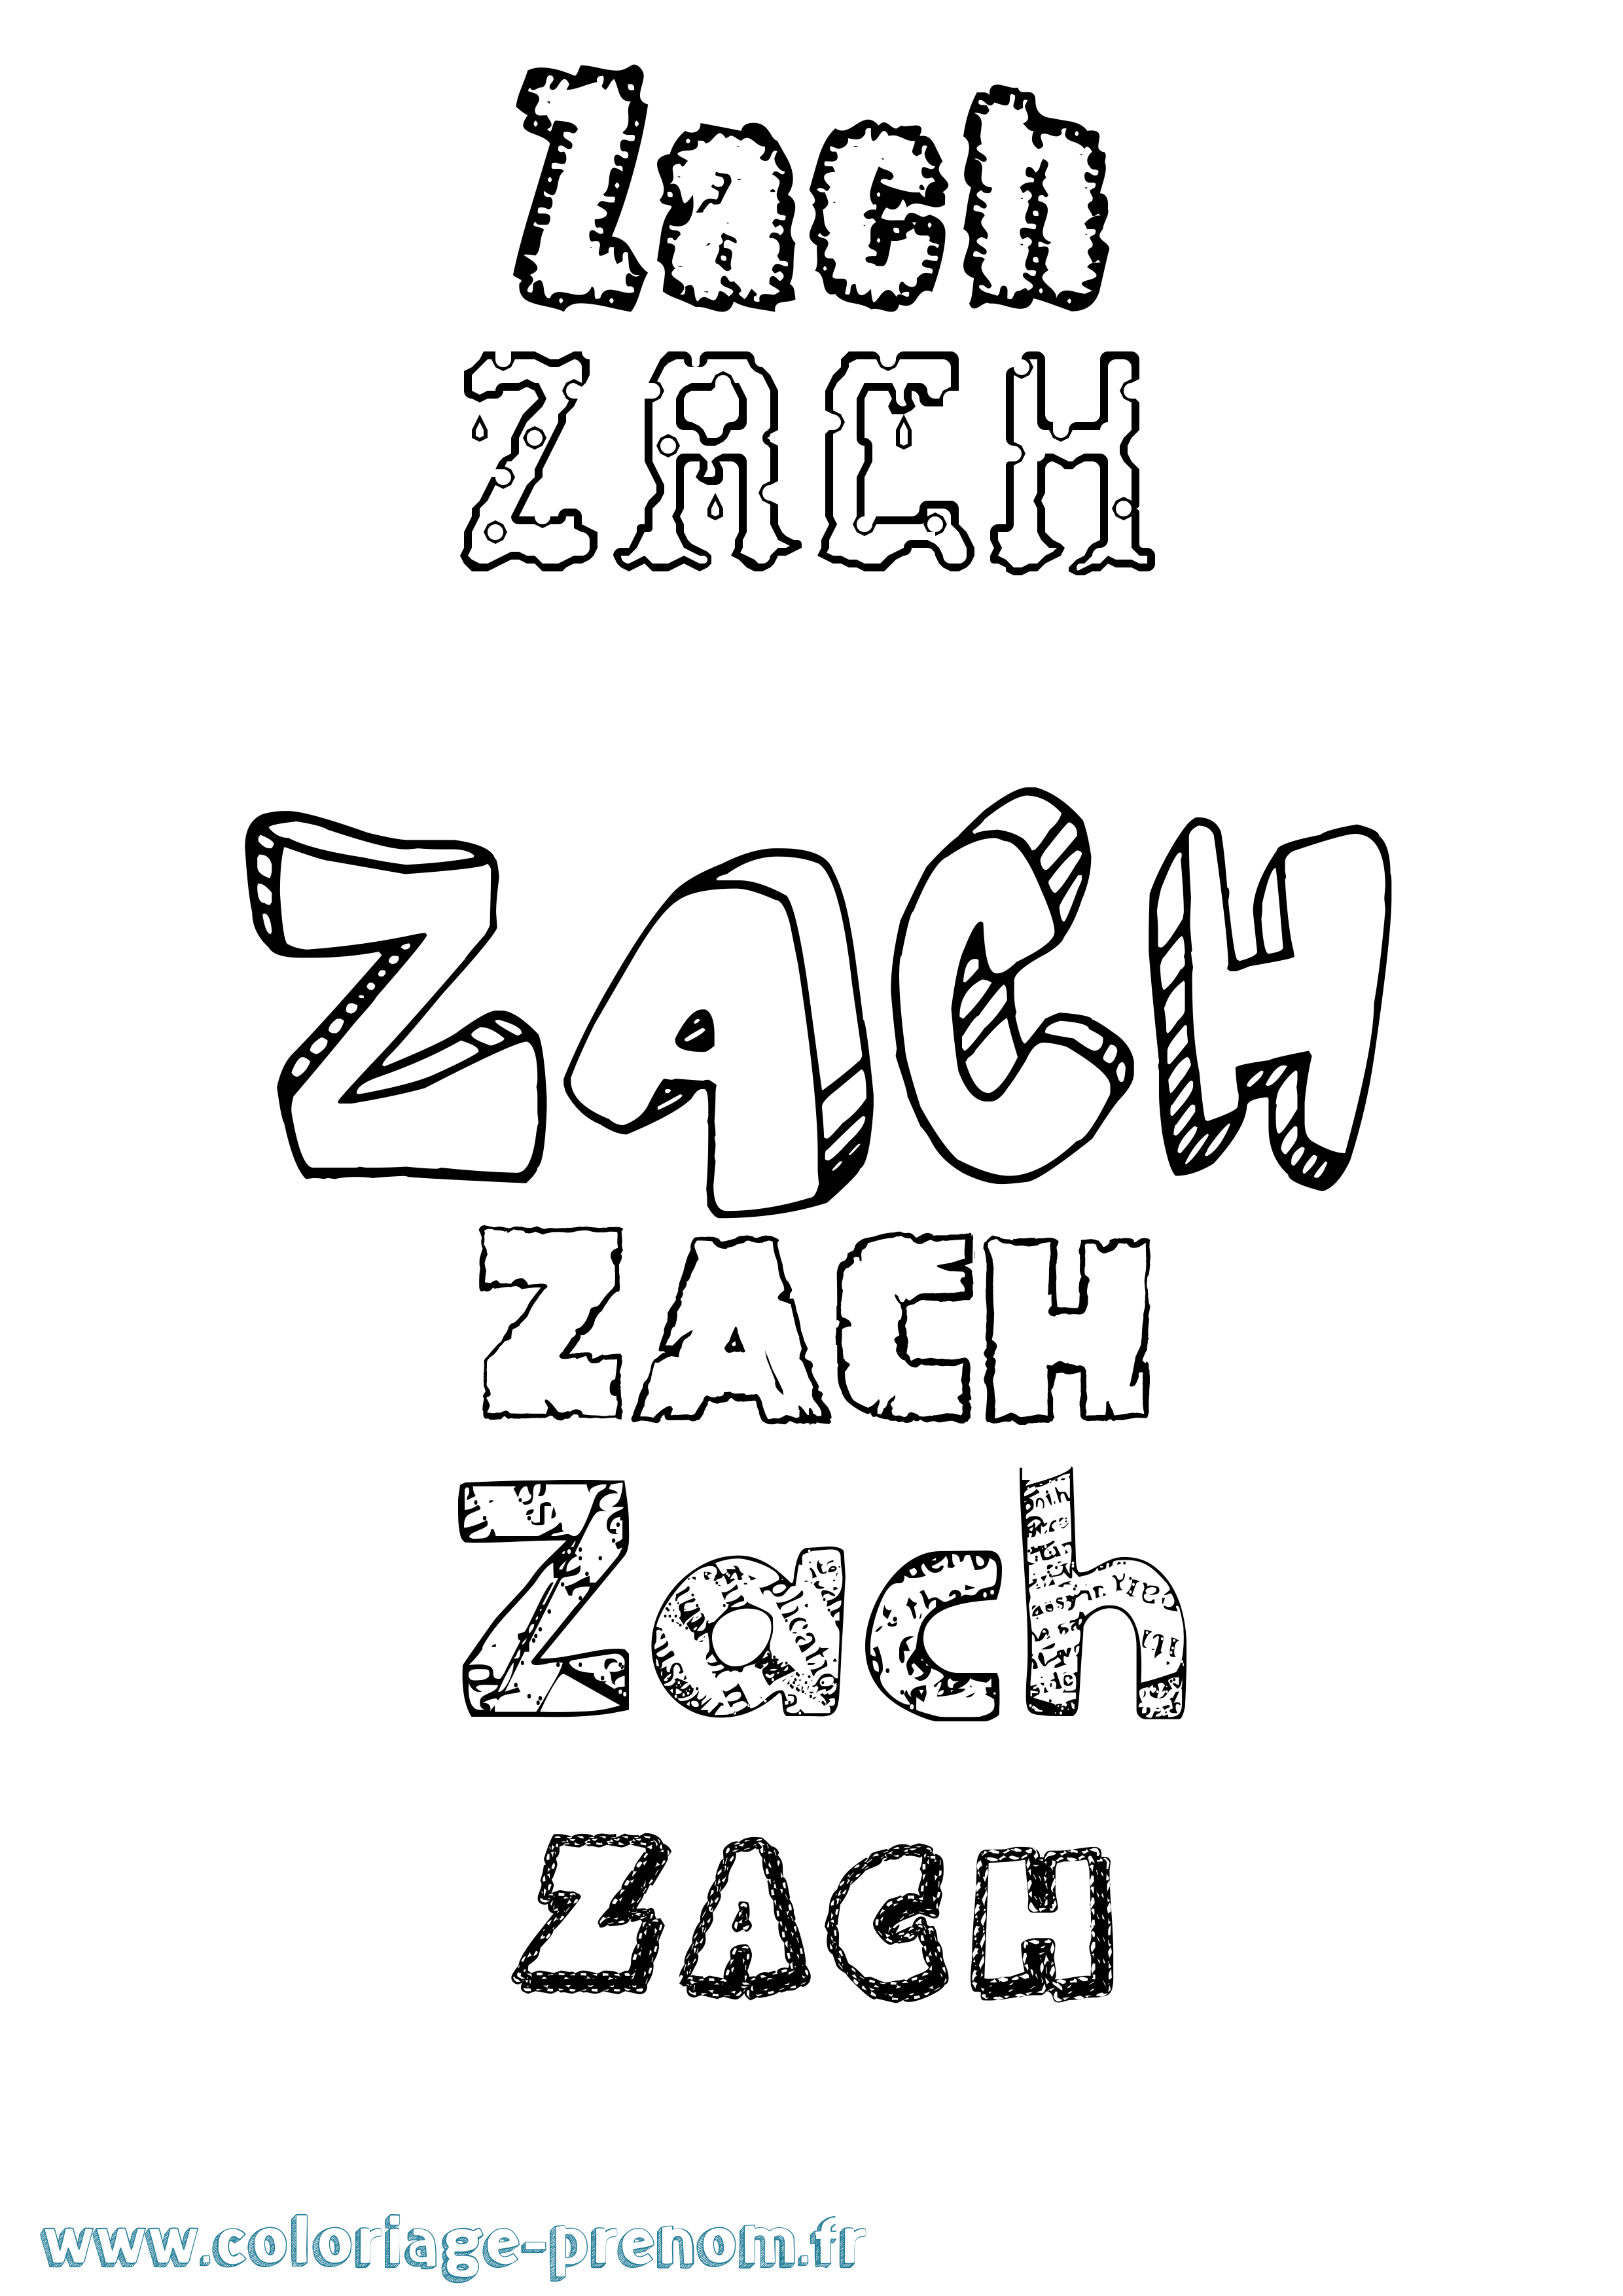 Coloriage prénom Zach Destructuré